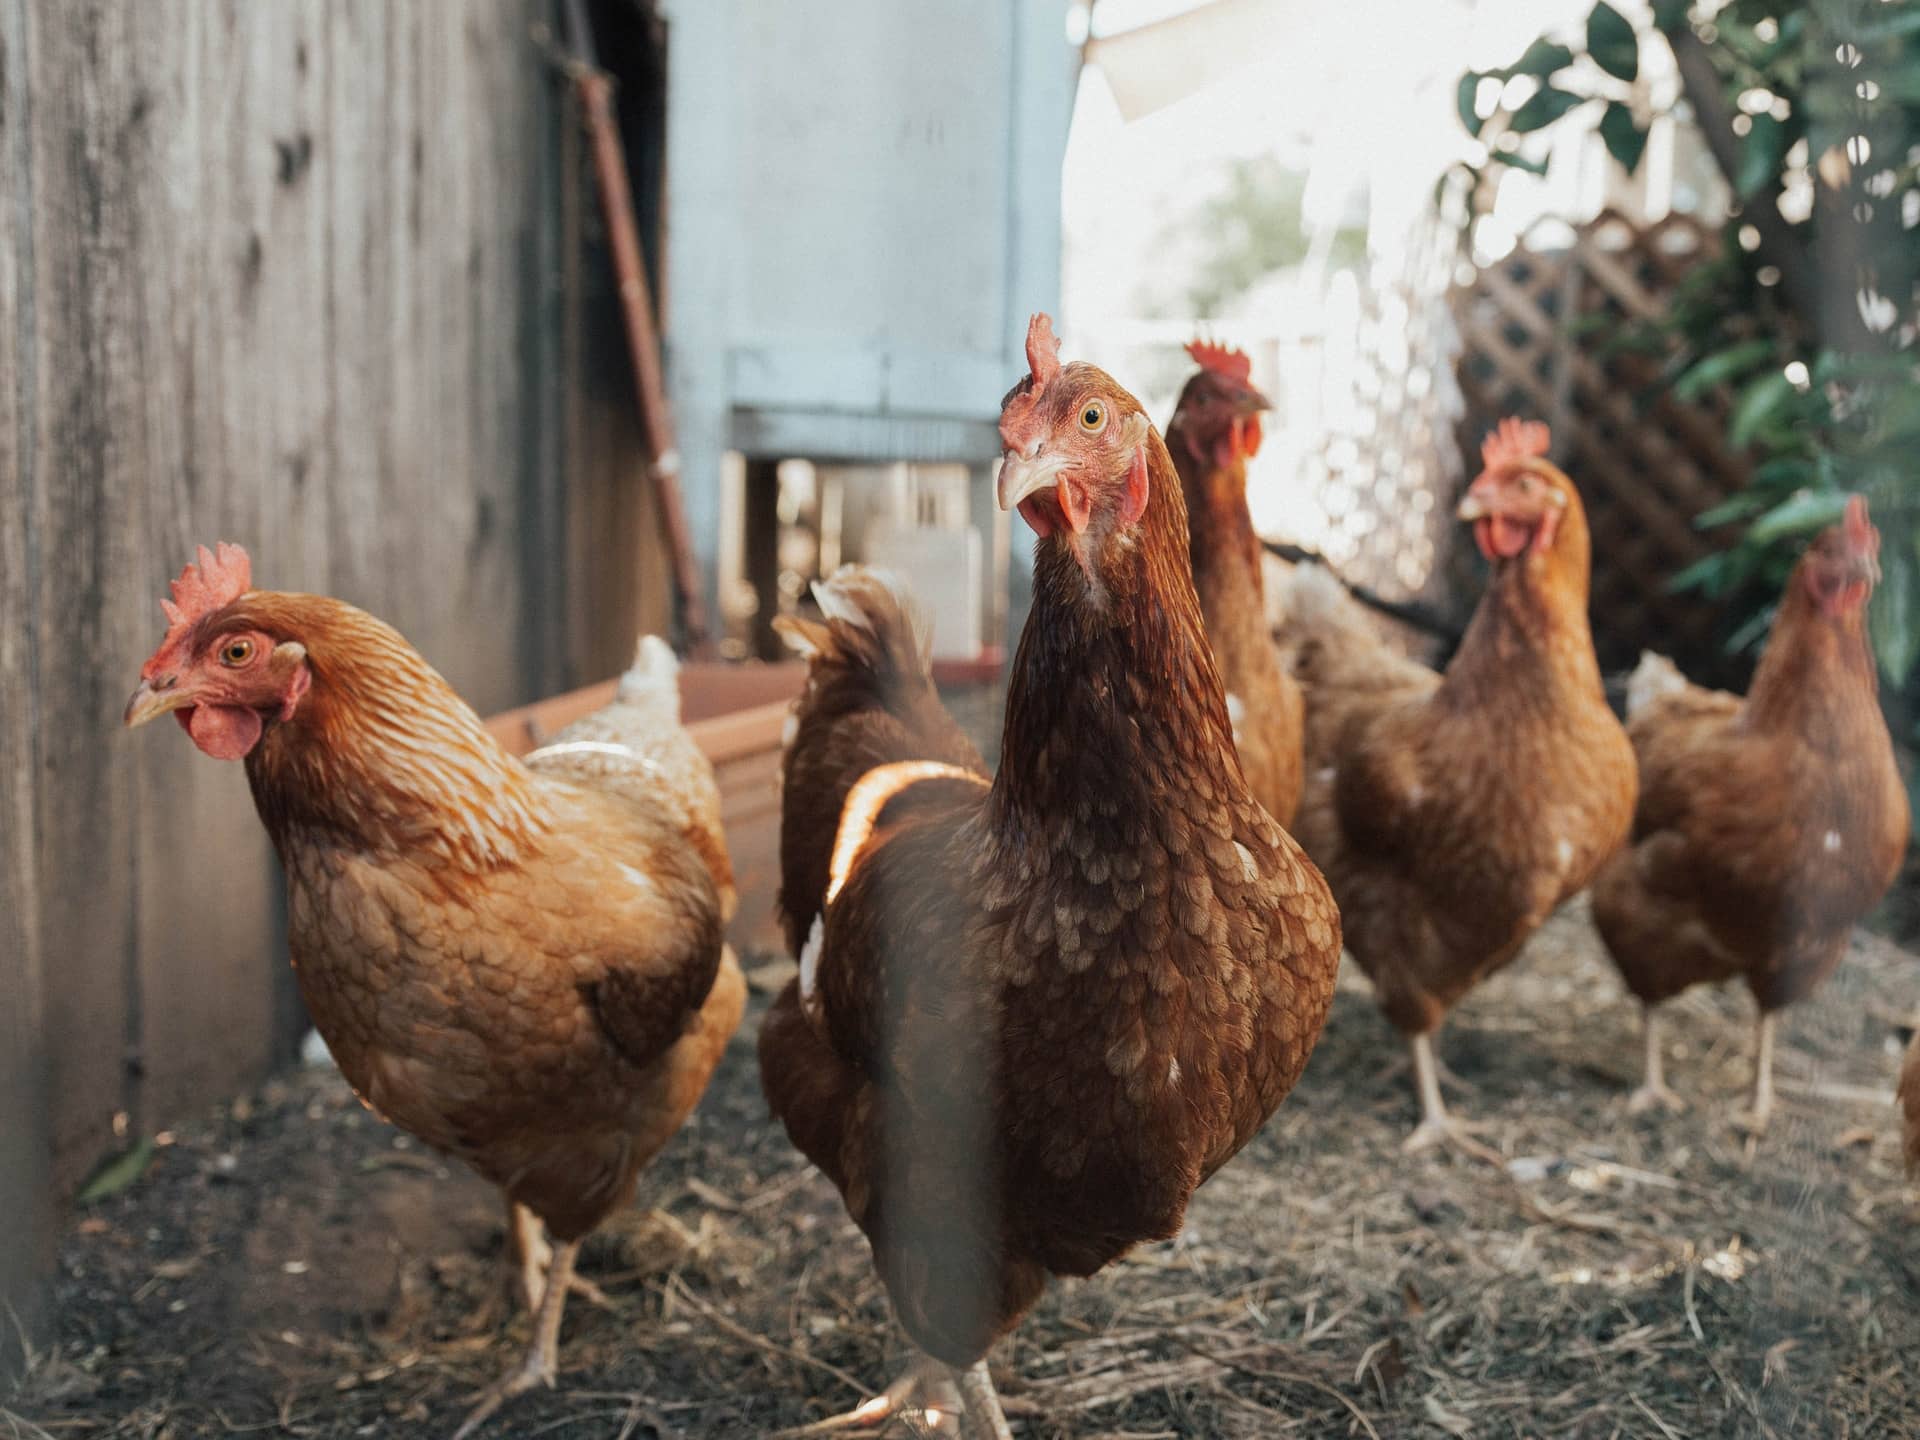 Jual Sprayer Kandang Ayam yang Pas untuk Peternakan - Toko Deeres